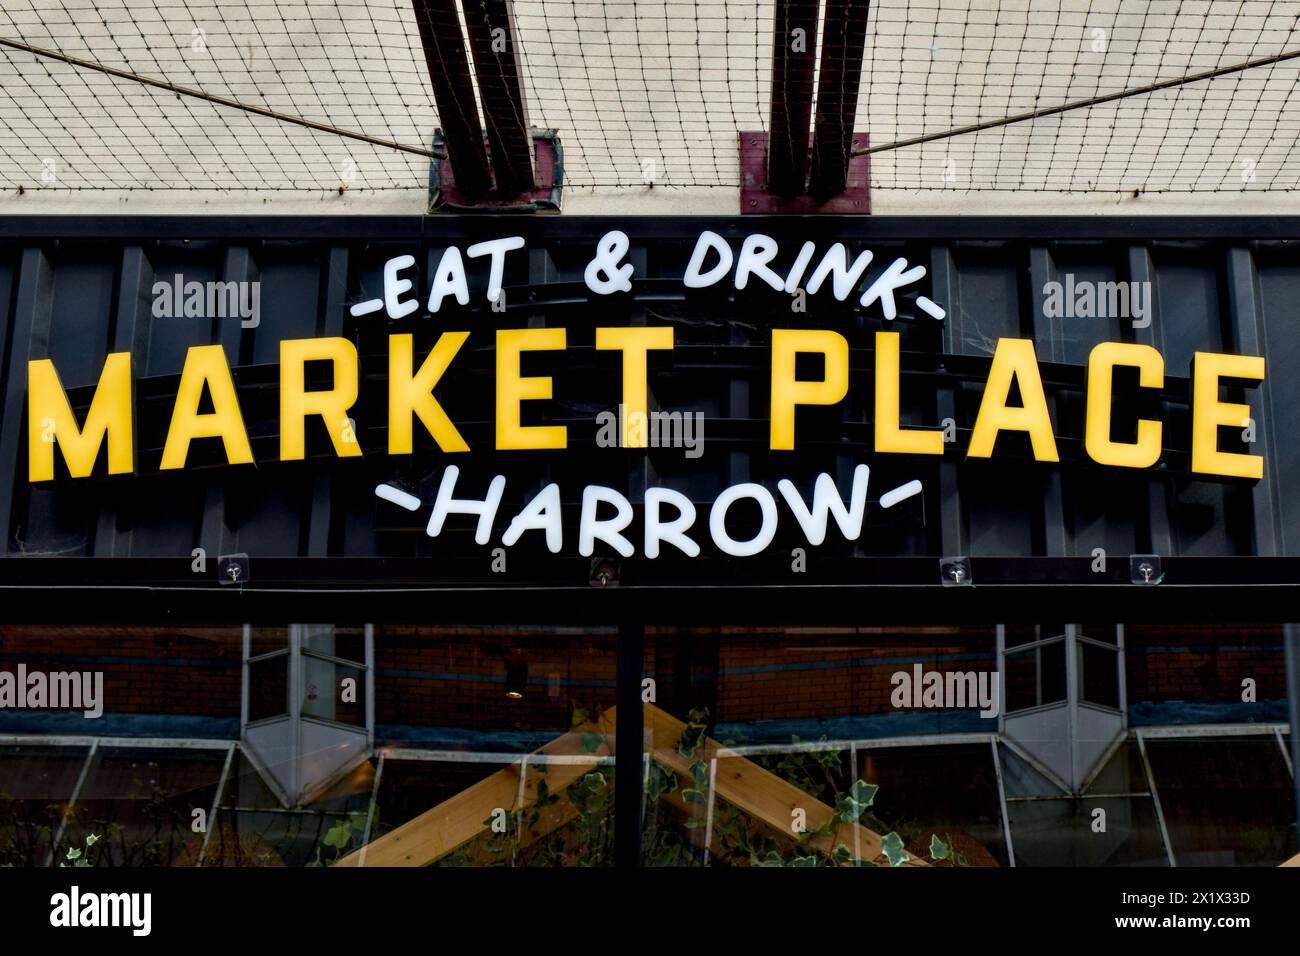 Market Place Harrow, Street Food Venue, Harrow Town Centre, Borough of Harrow, London, England, UK Stock Photo